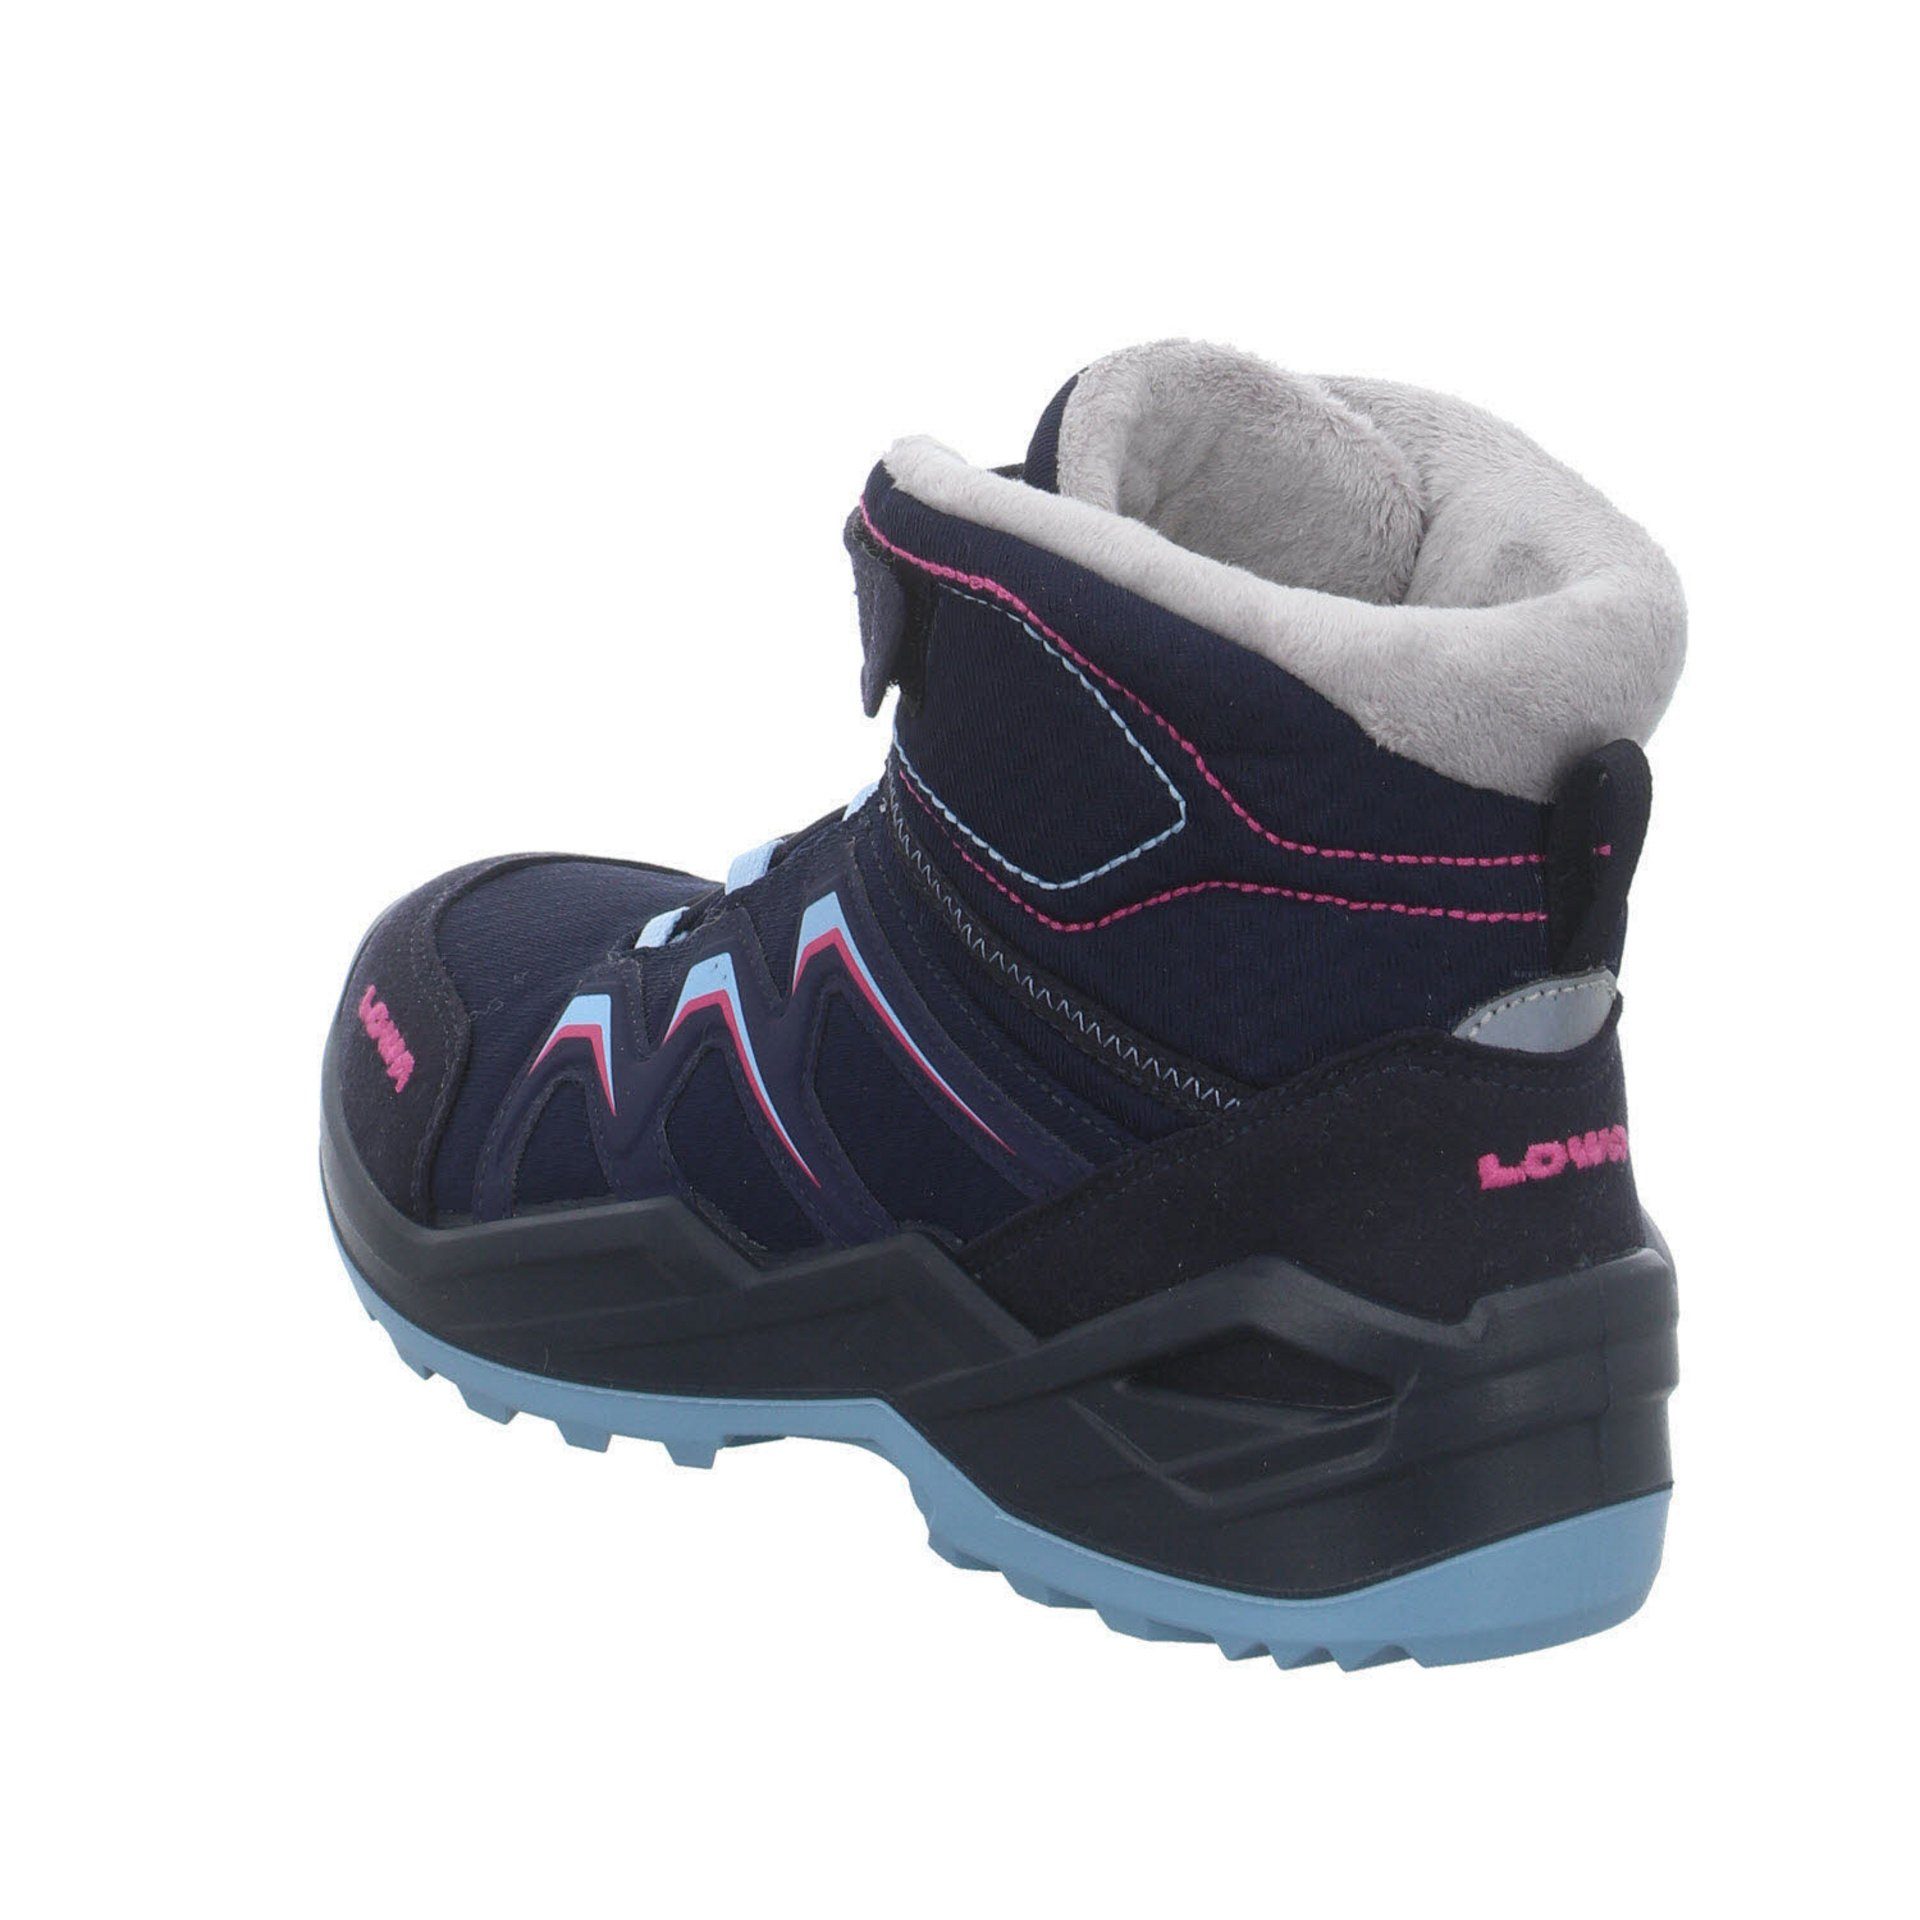 NAVY/BEERE Warm GTX Lowa Stiefel Maddox Textil Stiefel Jungen Boots Schuhe